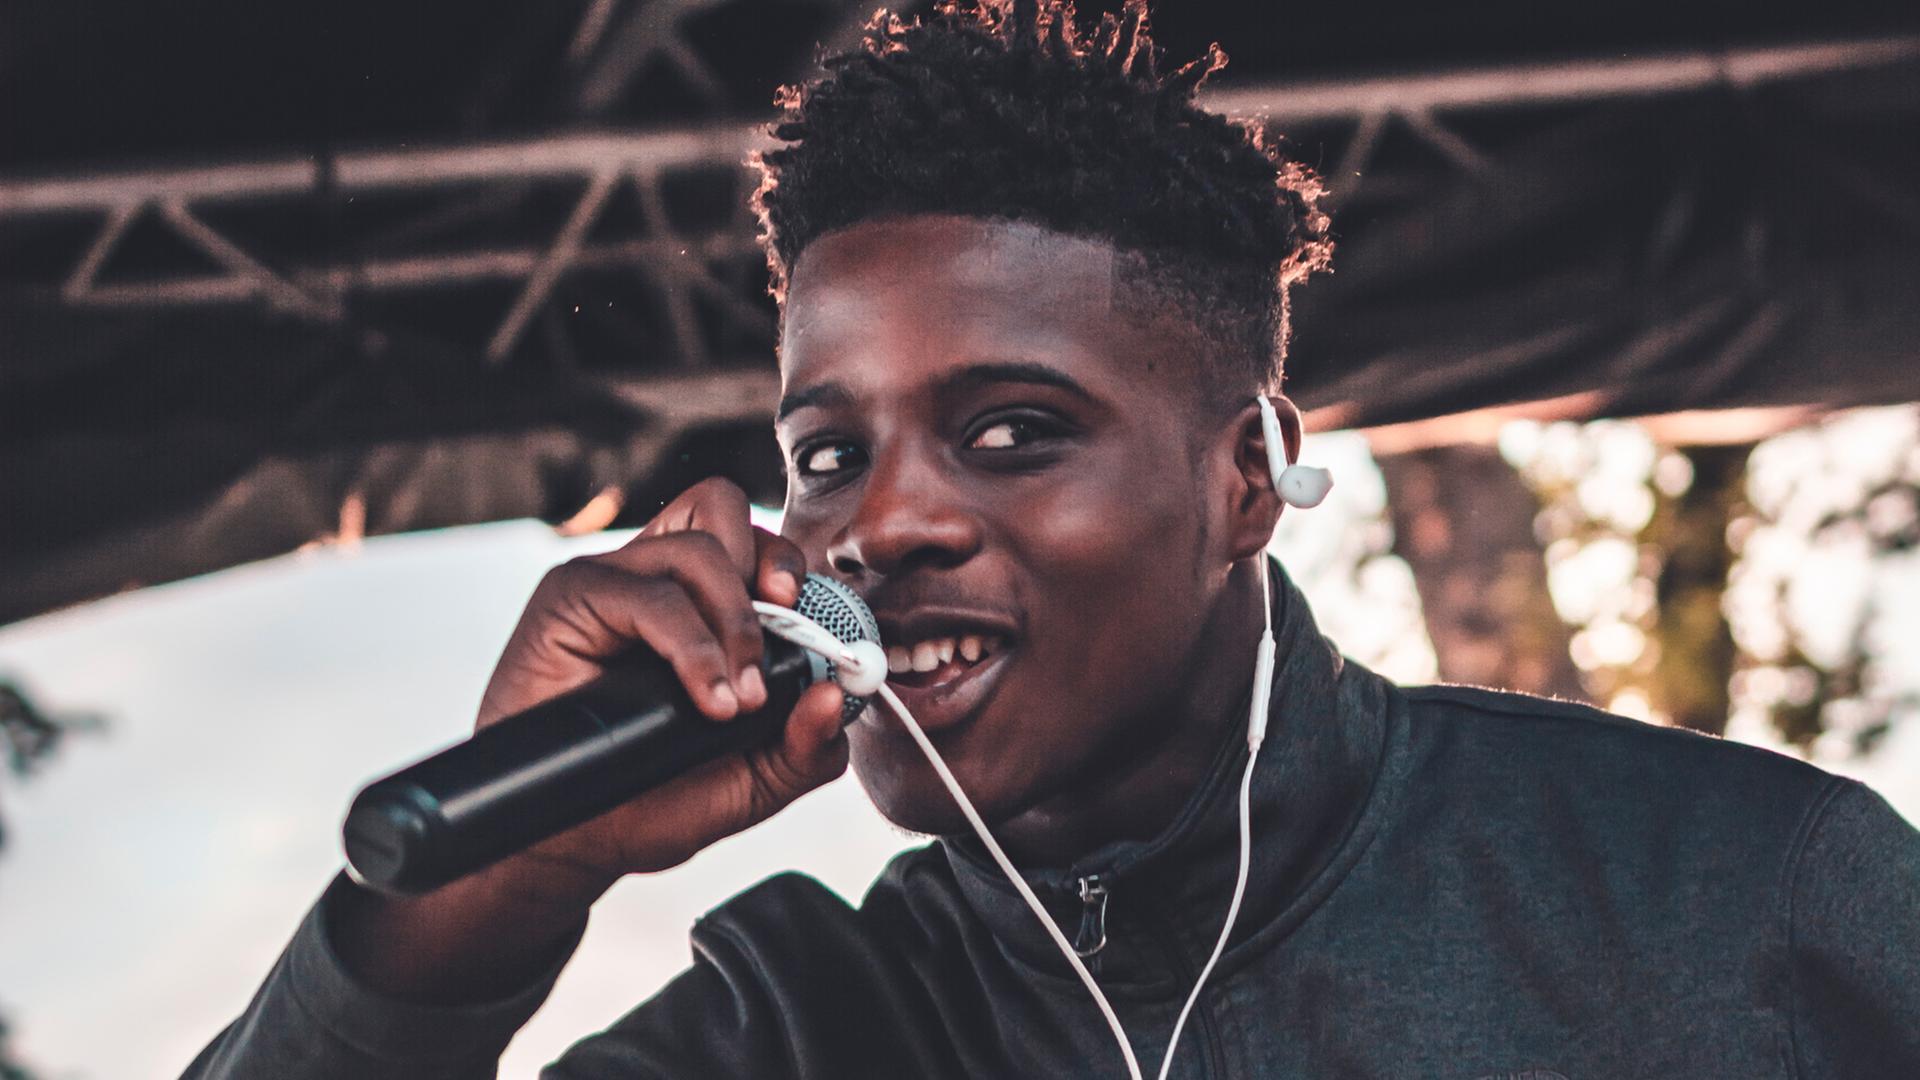 Ein junger schwarzer Mann, der sehr optimistisch aussieht, hält ein Mikrofon in der Hand und singt.